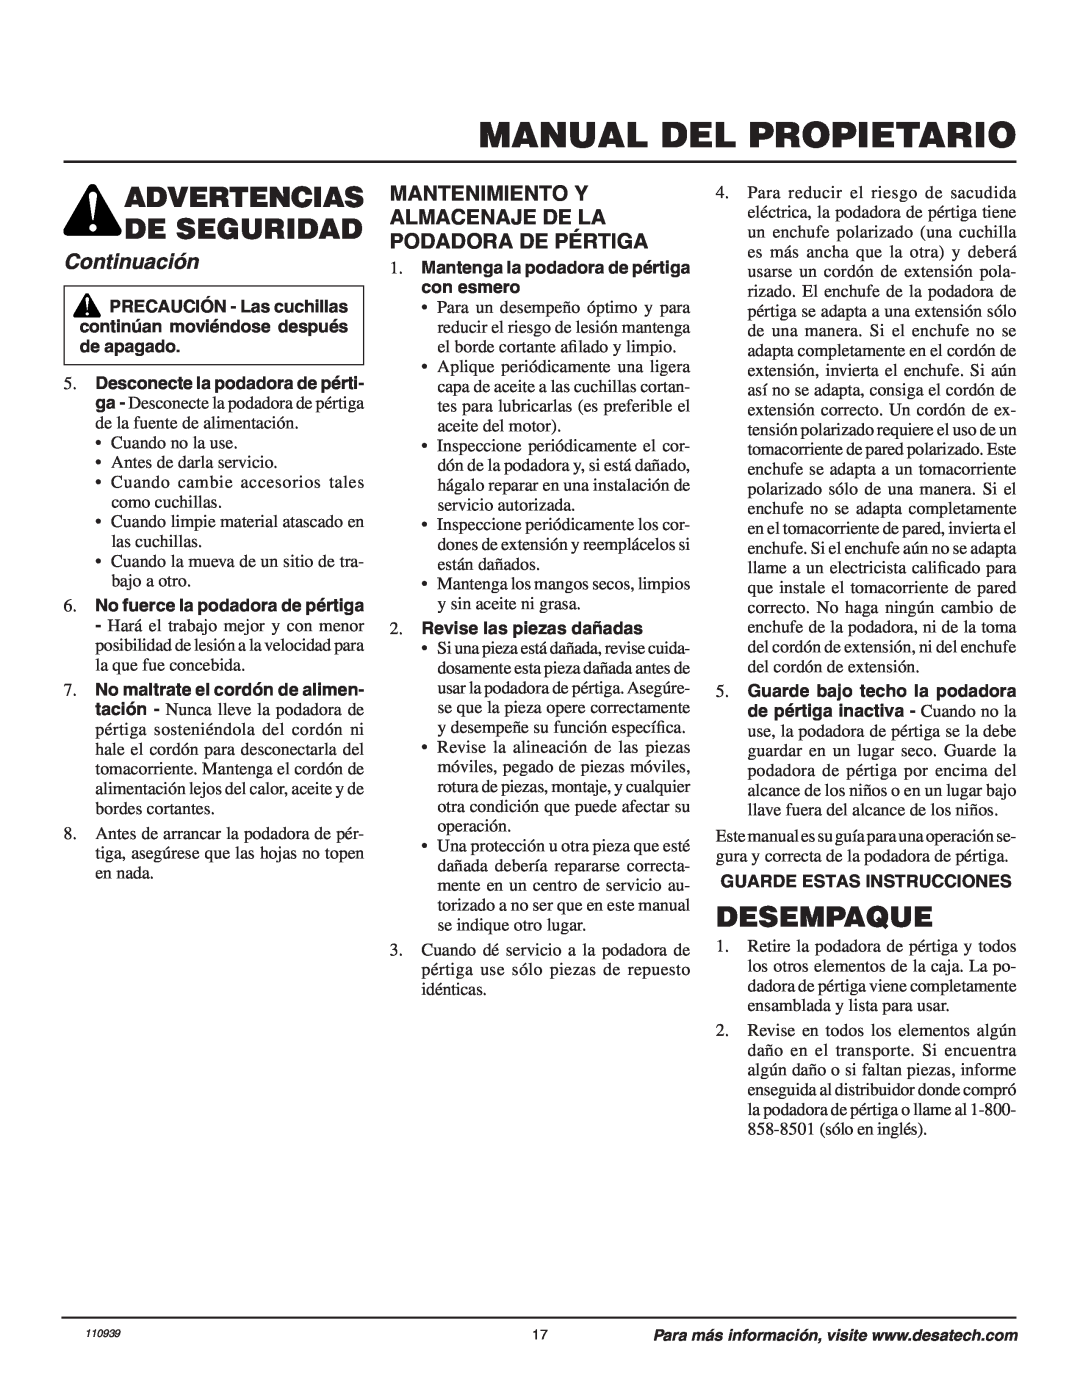 Desa 110946-01A Manual Del Propietario, Desempaque, Continuación, Mantenimiento Y Almacenaje De La Podadora De Pértiga 